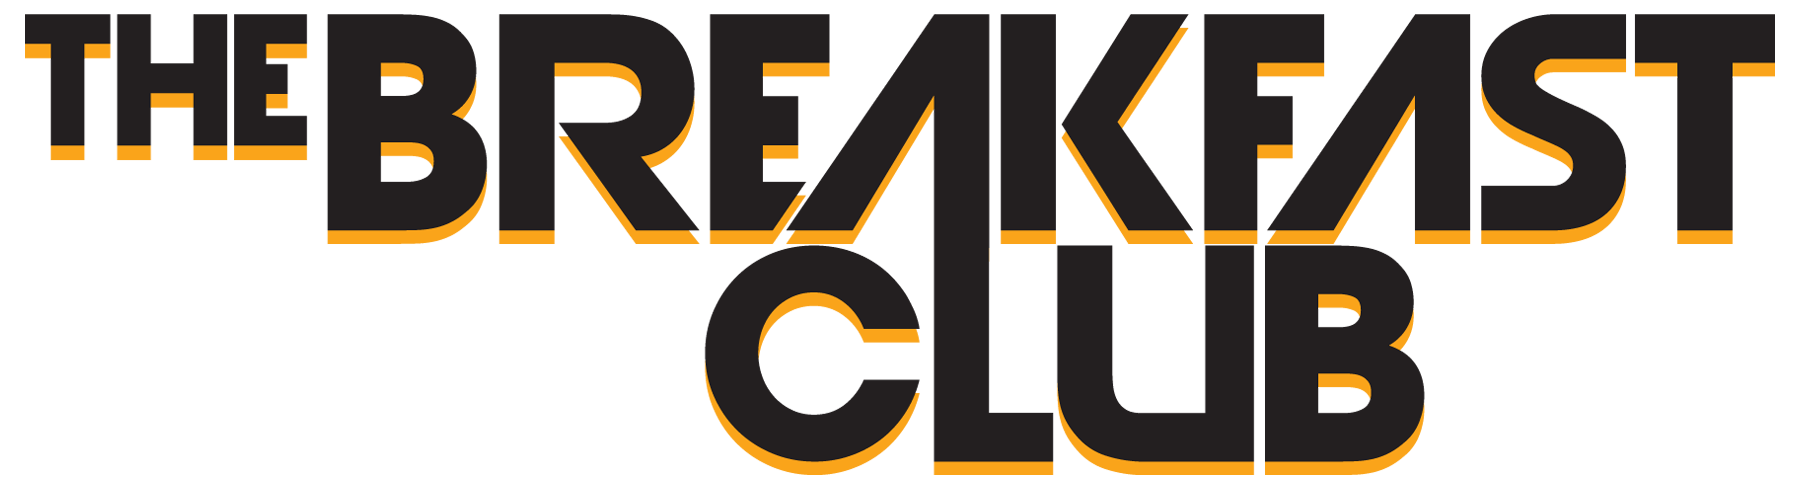 BreakfastClub_logo.png